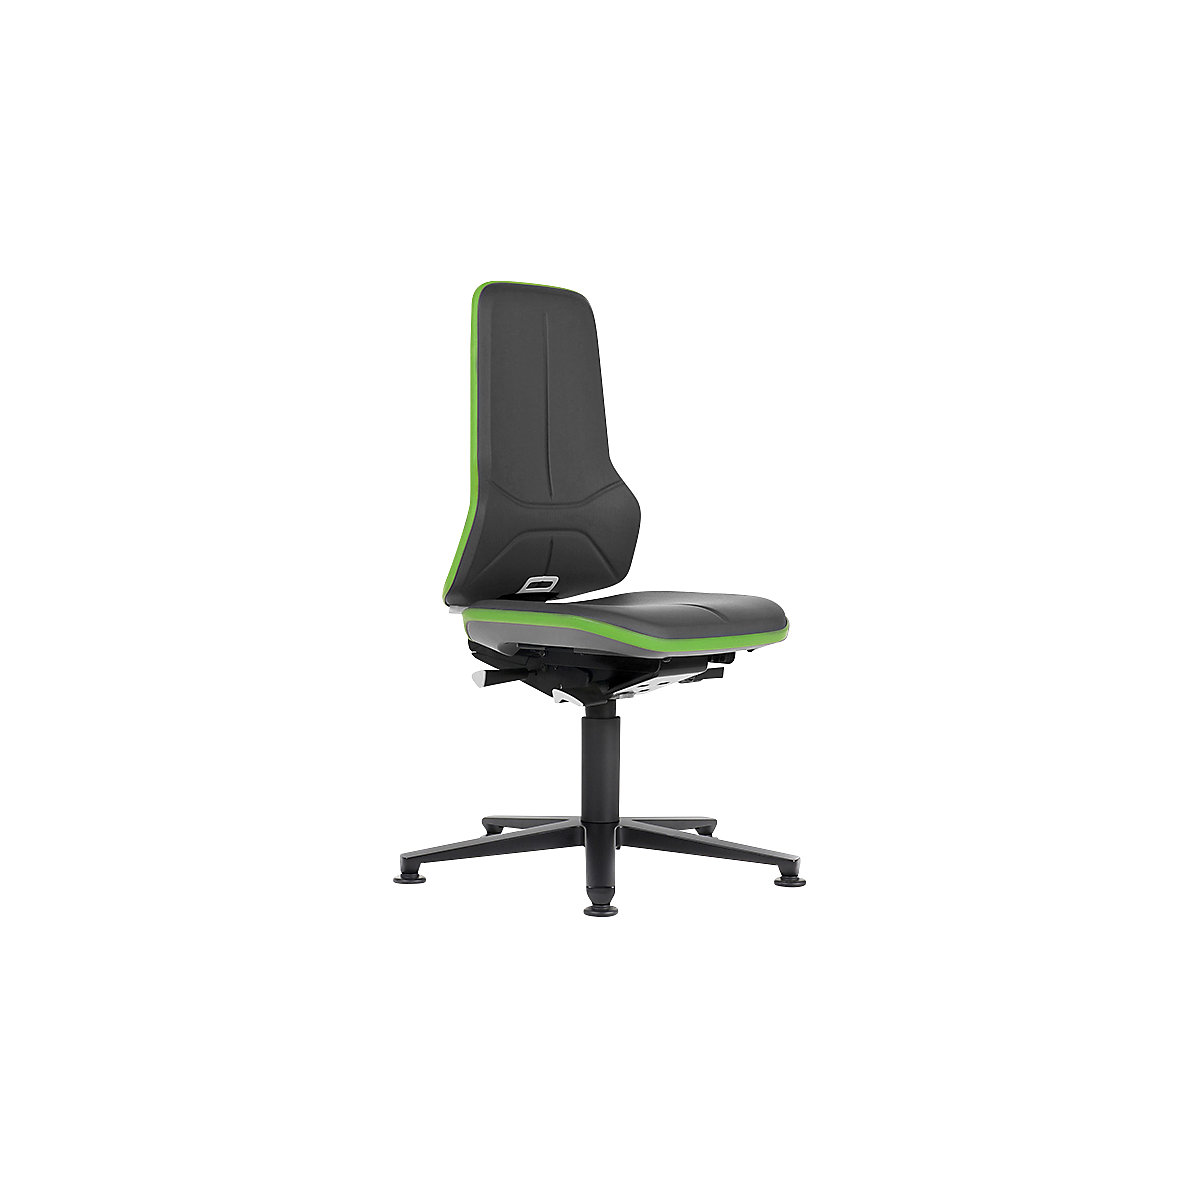 Pracovní otočná židle NEON, patky – bimos, permanentní kontakt, koženka, zelený flexibilní pás-16